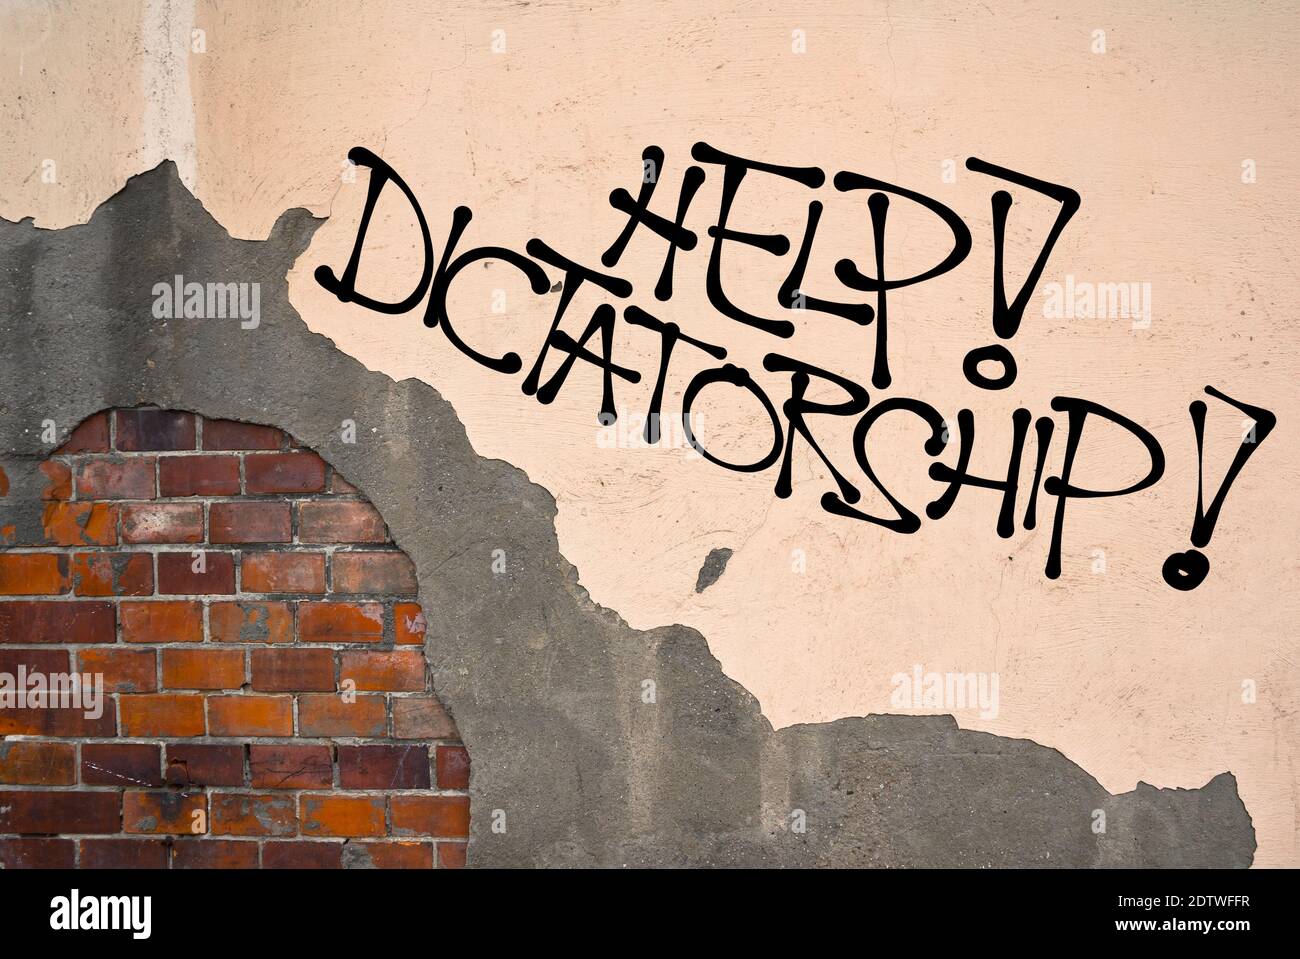 Hilfe! Diktatur - handgeschriebene Graffiti an die Wand gesprüht, anarchistische Ästhetik - Gefahr des autoritären, absolutistischen, dominanten Herrschers und seiner / er Stockfoto